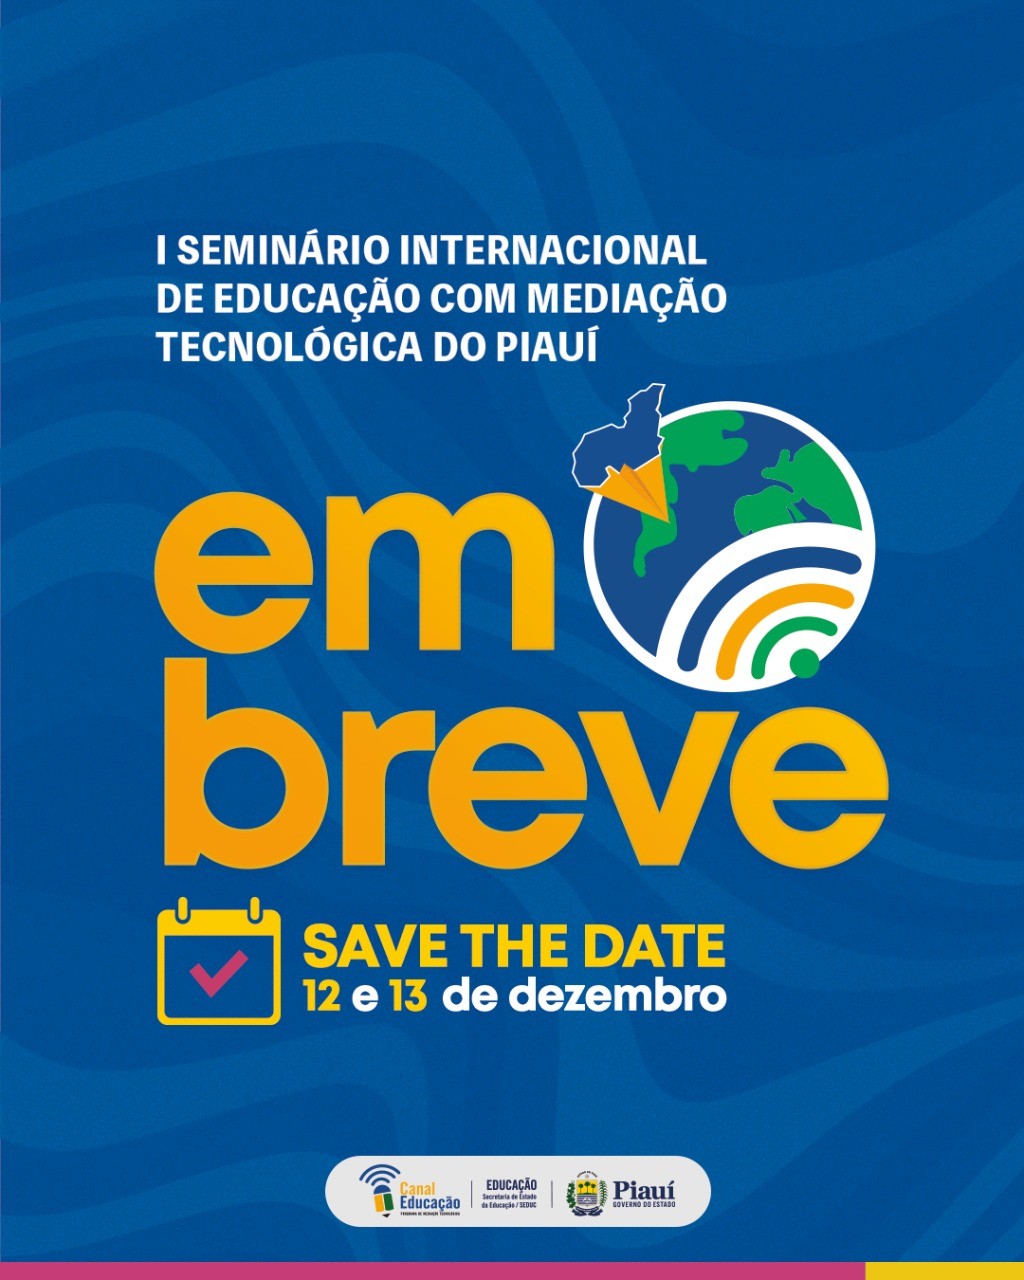 I Seminário Internacional de Mediação Tecnológica do Piauí vai reunir pesquisadores de outros países